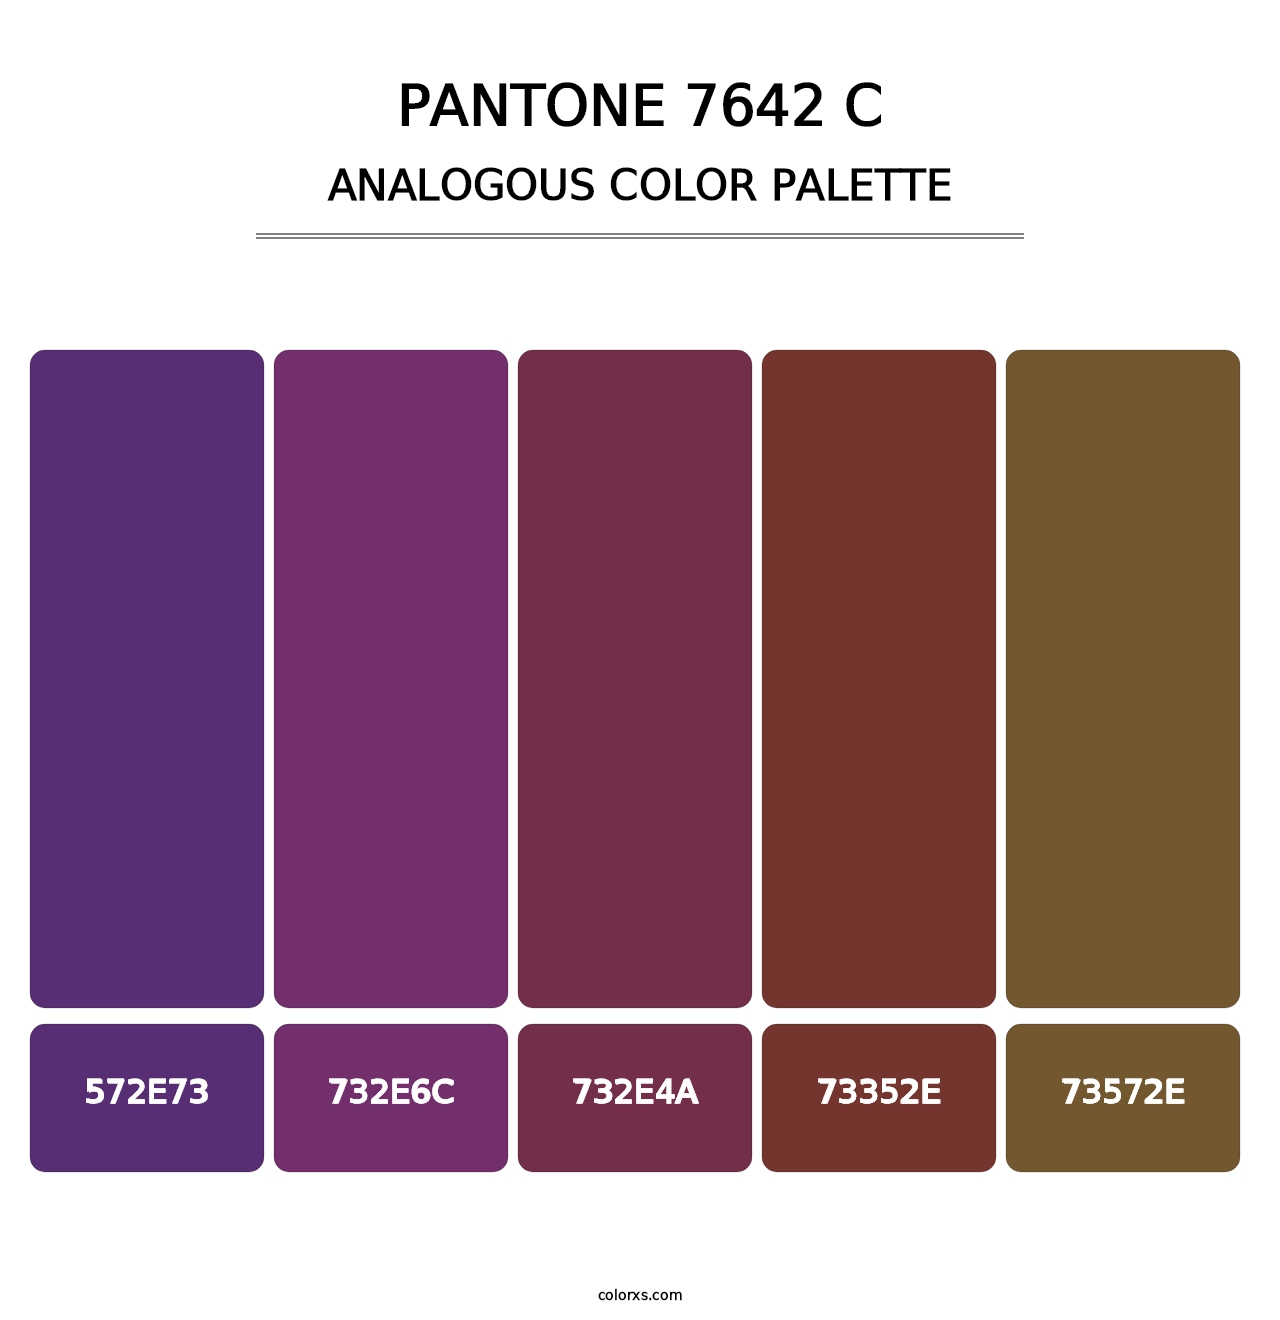 PANTONE 7642 C - Analogous Color Palette